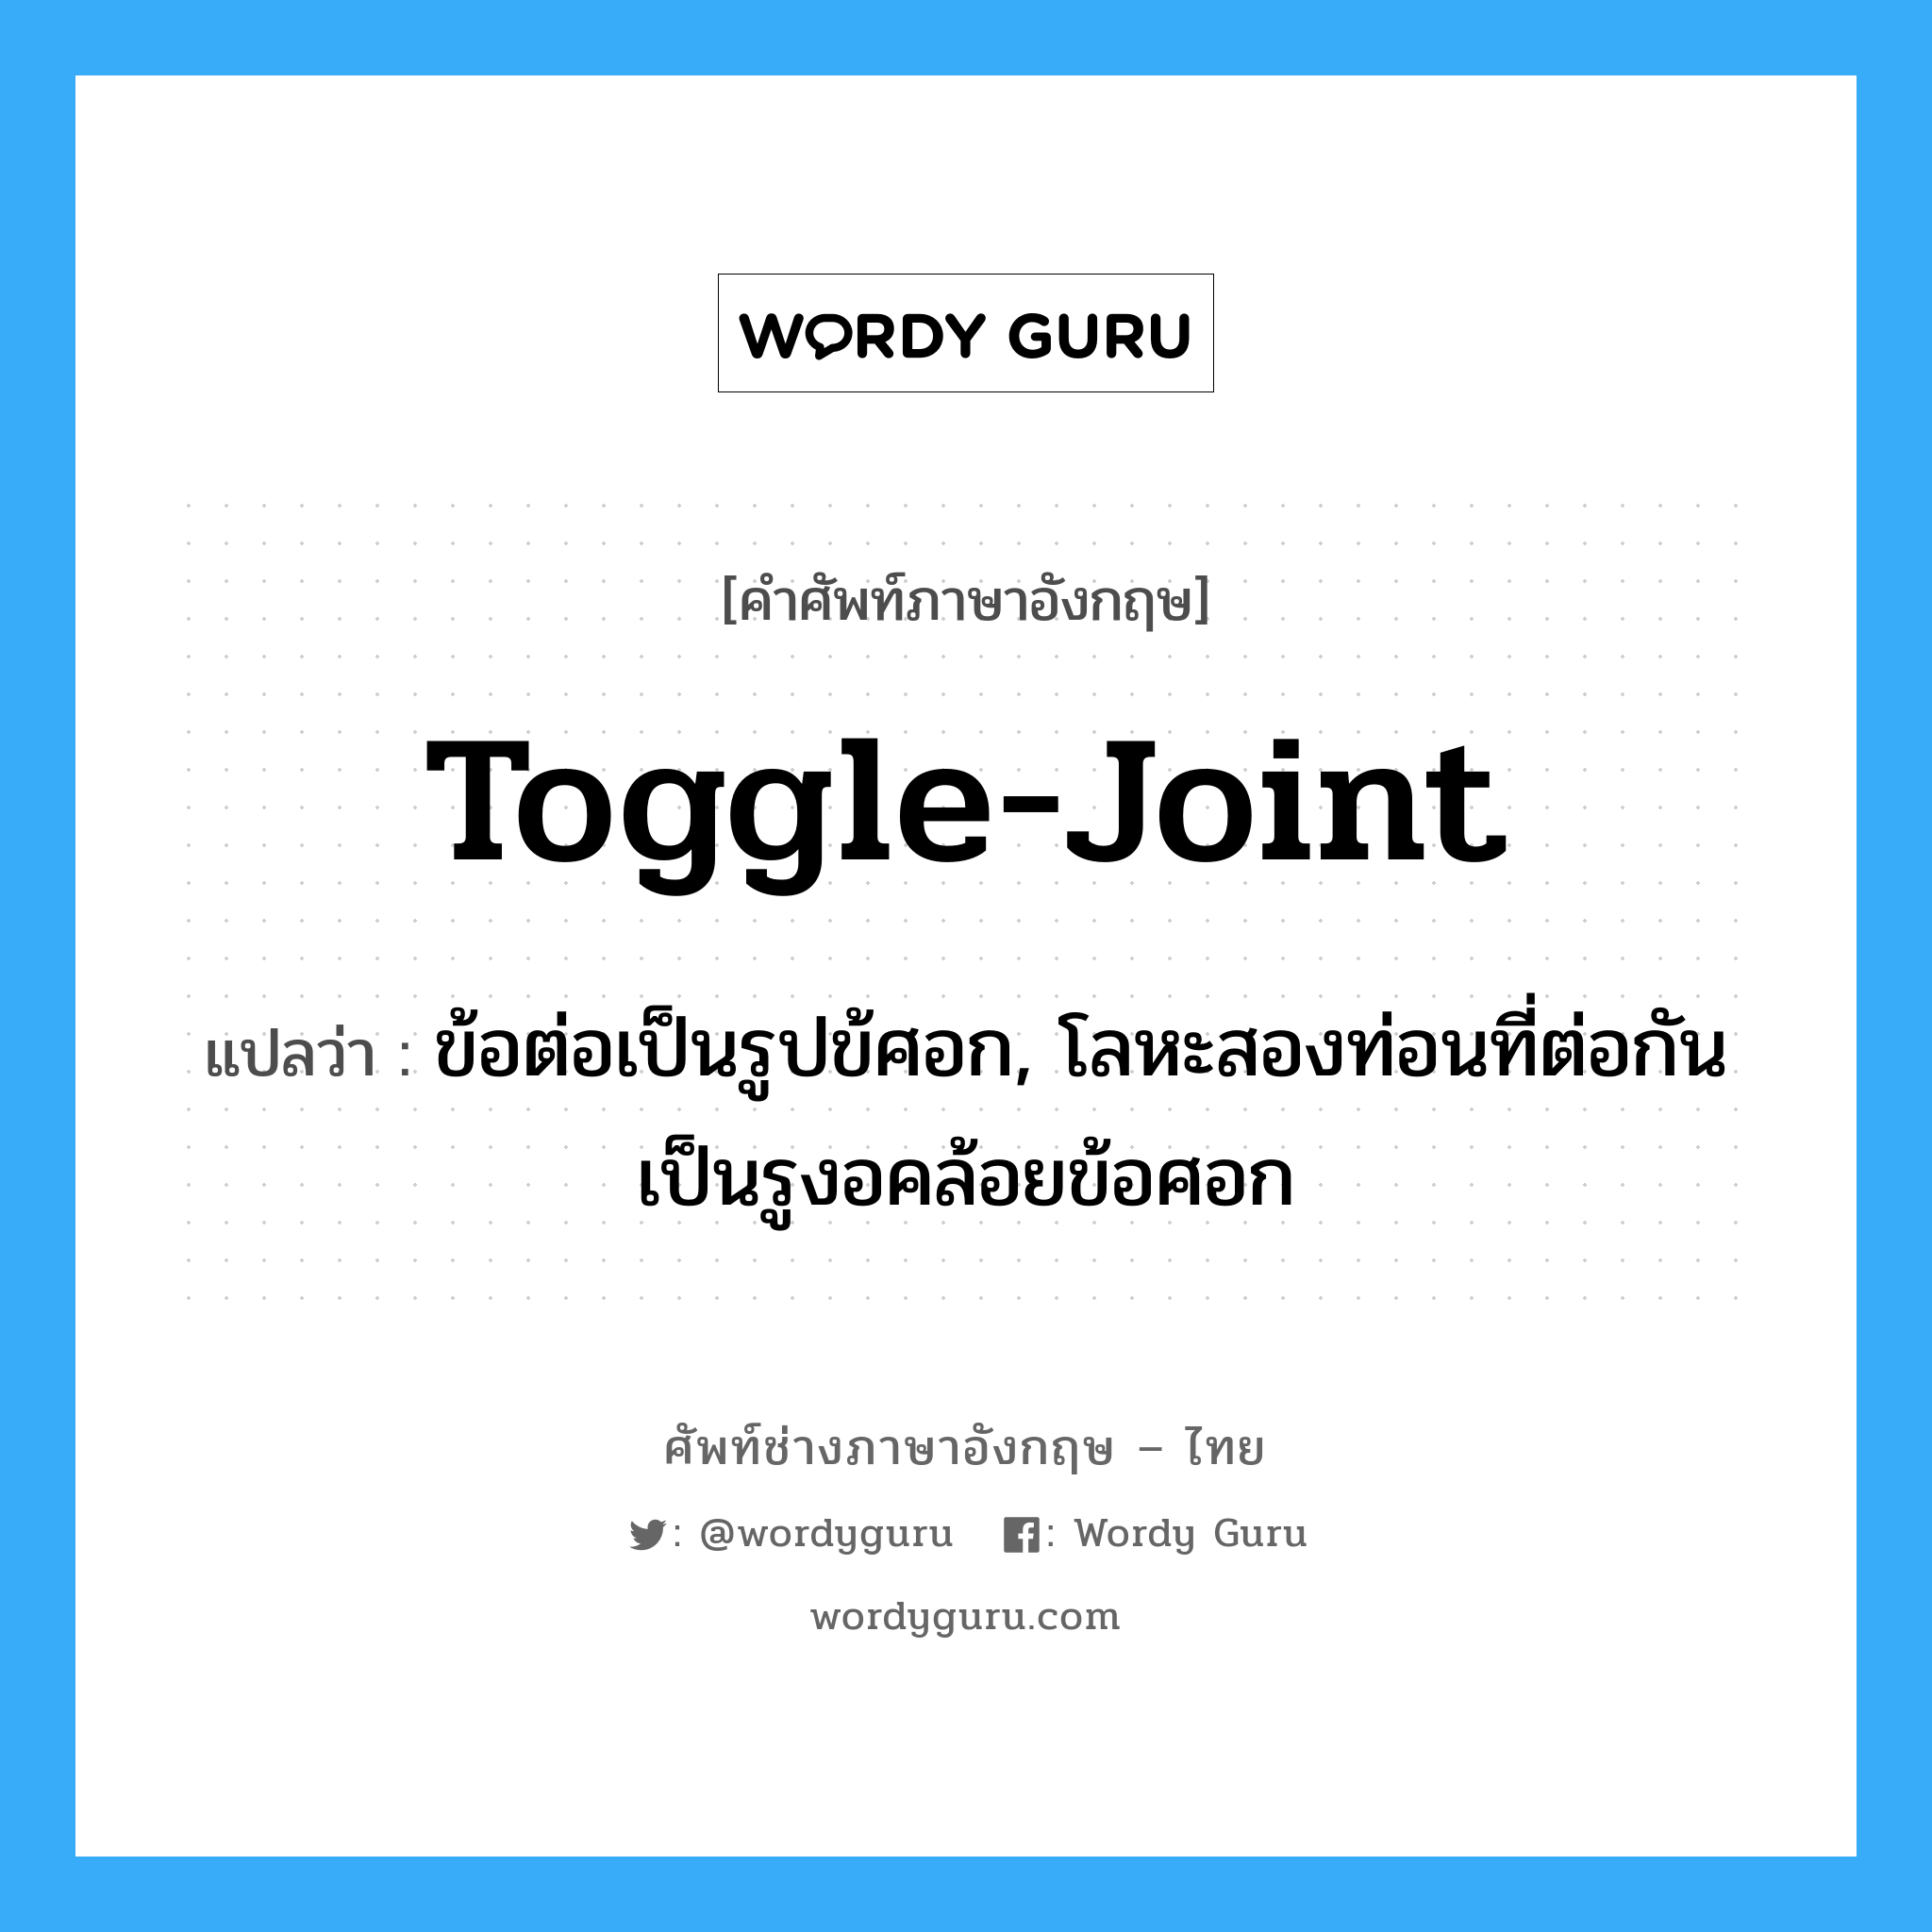 toggle-joint แปลว่า?, คำศัพท์ช่างภาษาอังกฤษ - ไทย toggle-joint คำศัพท์ภาษาอังกฤษ toggle-joint แปลว่า ข้อต่อเป็นรูปข้ศอก, โลหะสองท่อนที่ต่อกันเป็นรูงอคล้อยข้อศอก